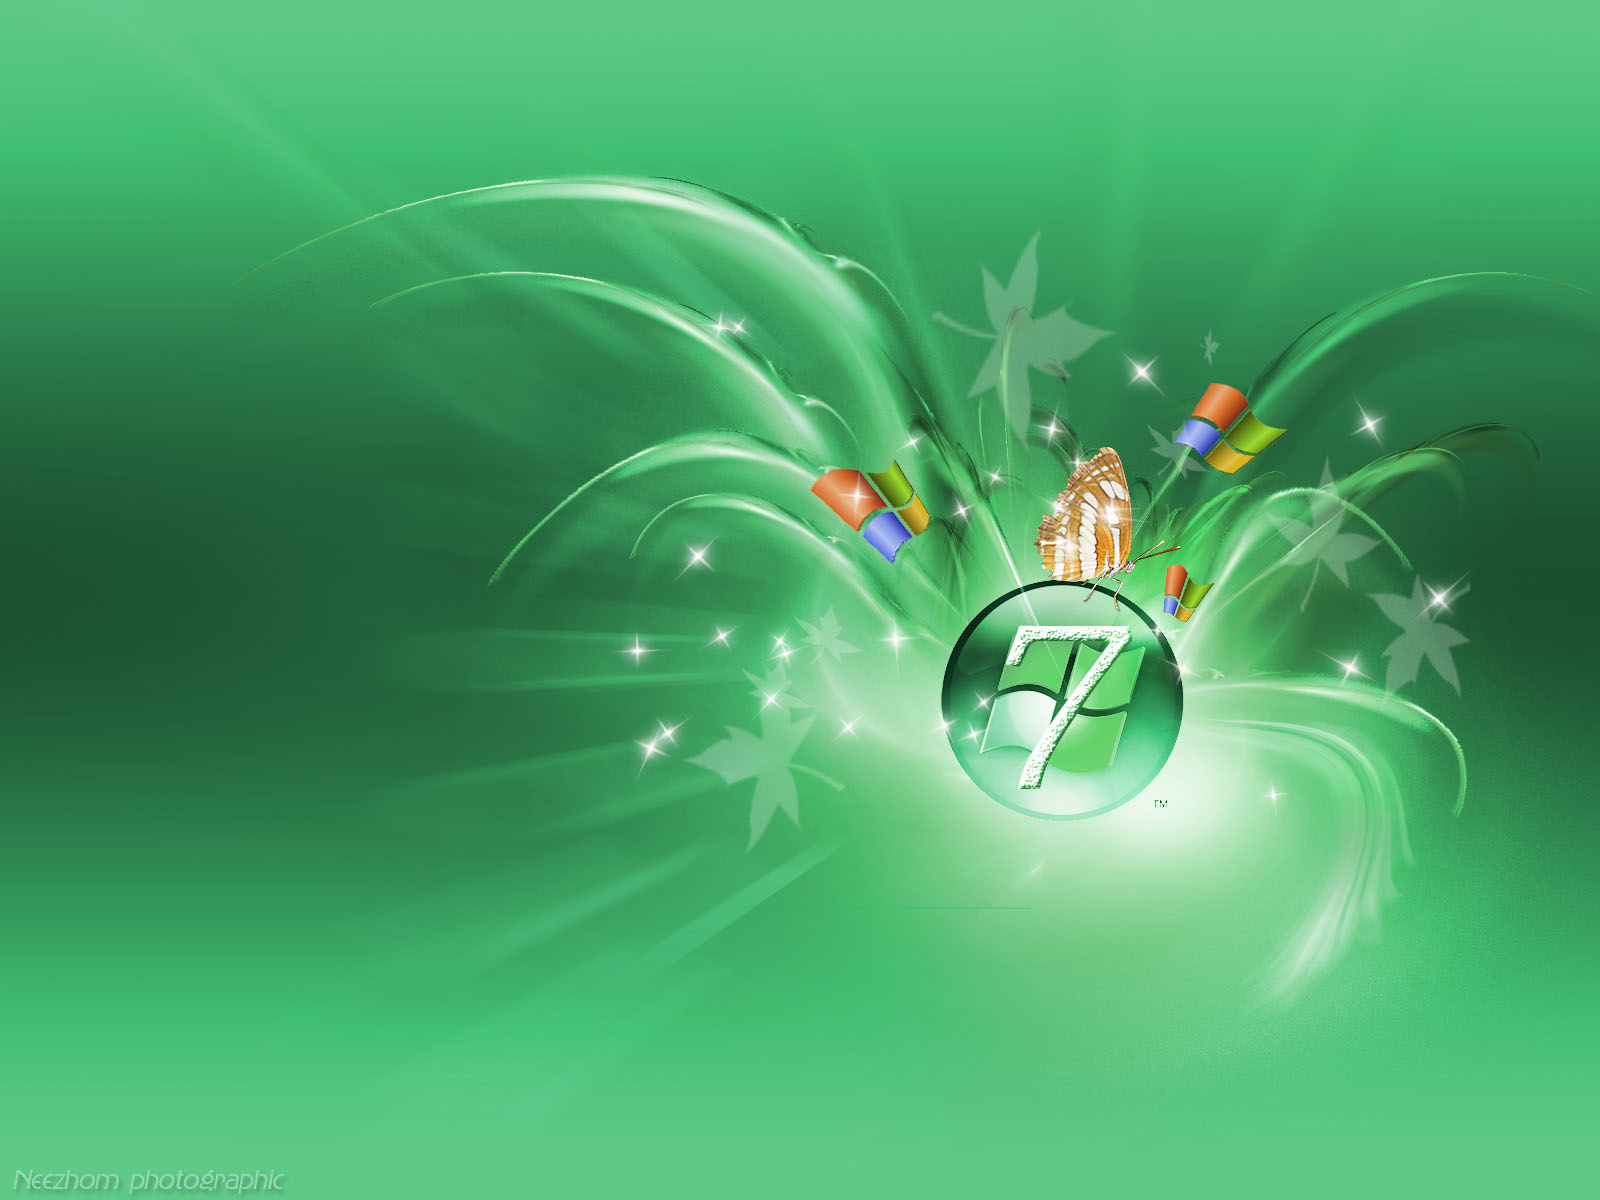 http://3.bp.blogspot.com/-X6E_sFTptmA/TkekKWmcl0I/AAAAAAAADN4/O63I2Dd2HpU/s1600/Cover+Windows++7+3D+green+wallpaper.jpg